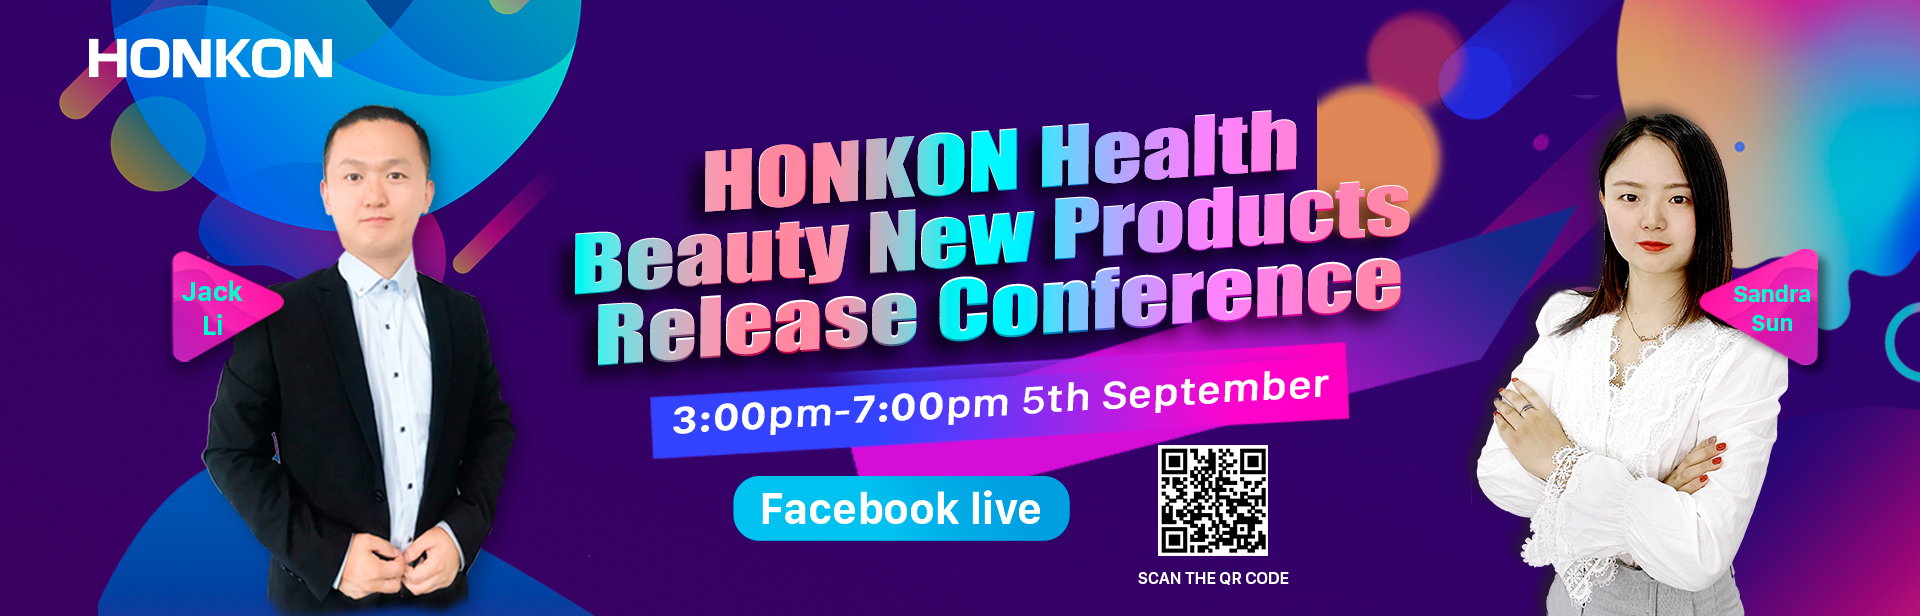 Conferencia de lanzamiento de nuevos productos de salud y belleza de HONKON4